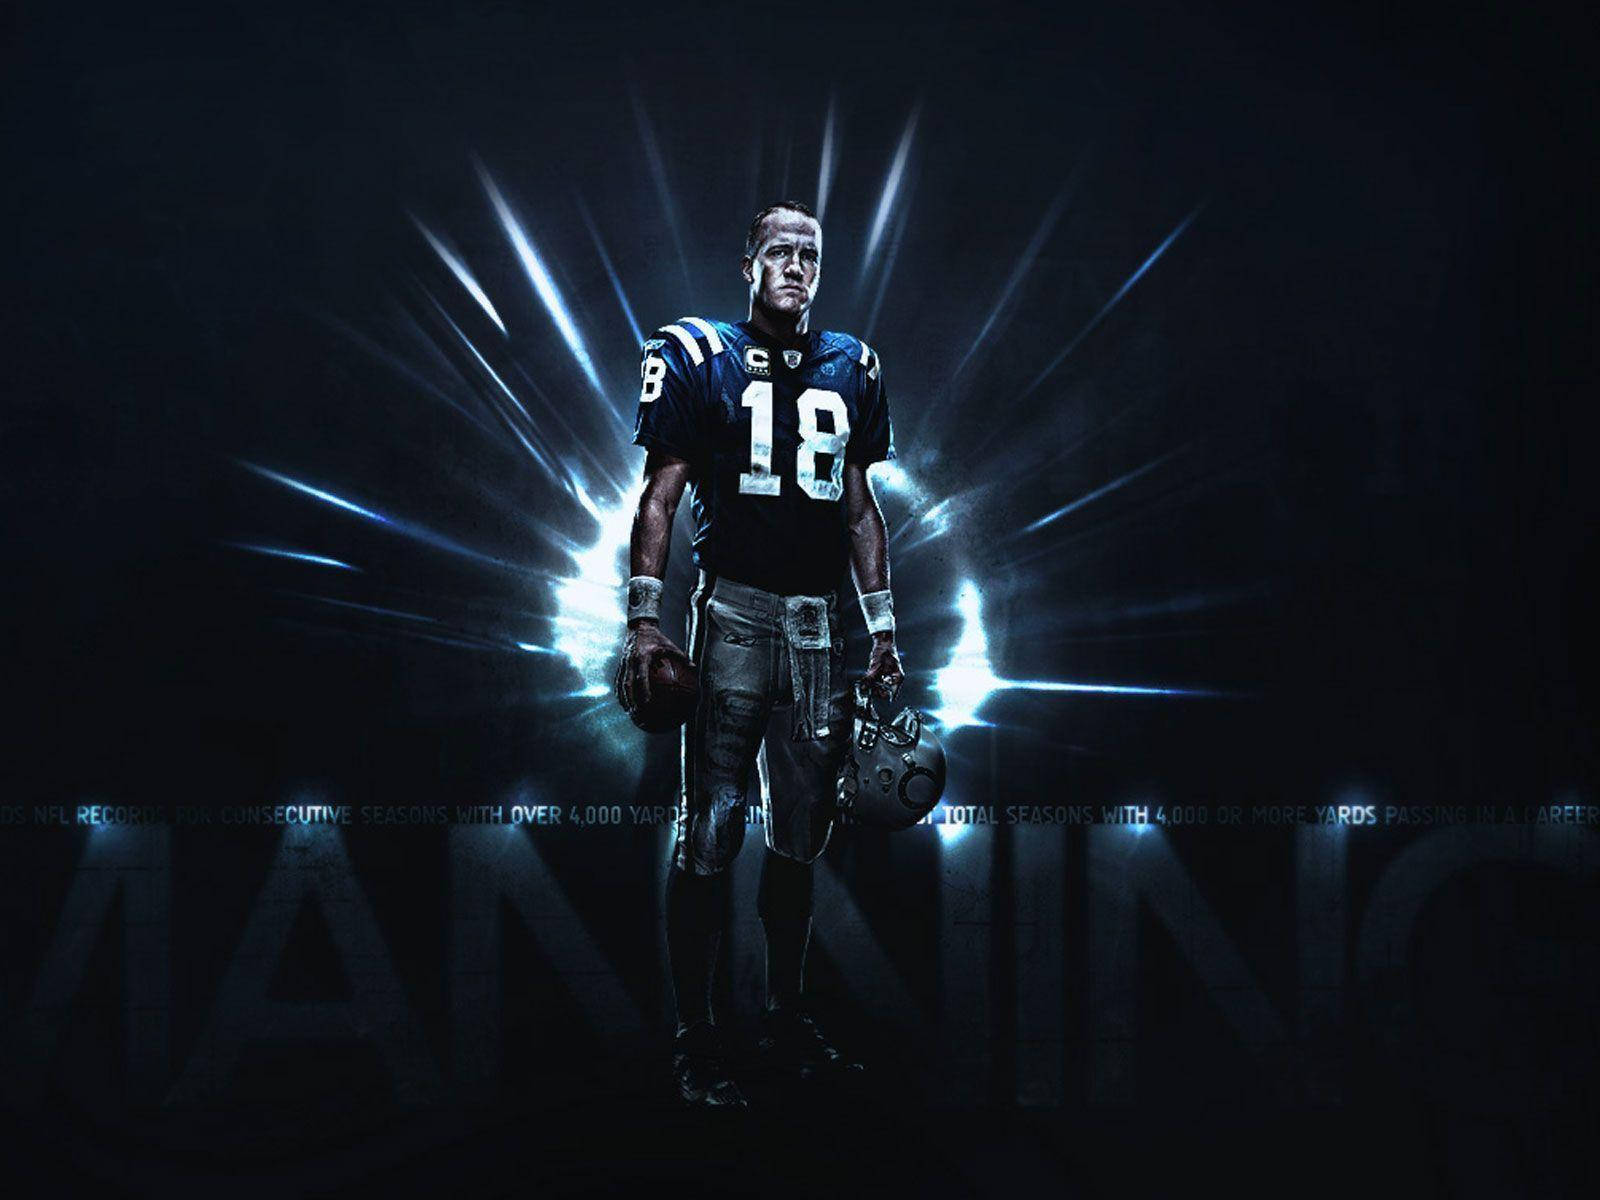 Nfl Football Player Peyton Manning Wallpaper